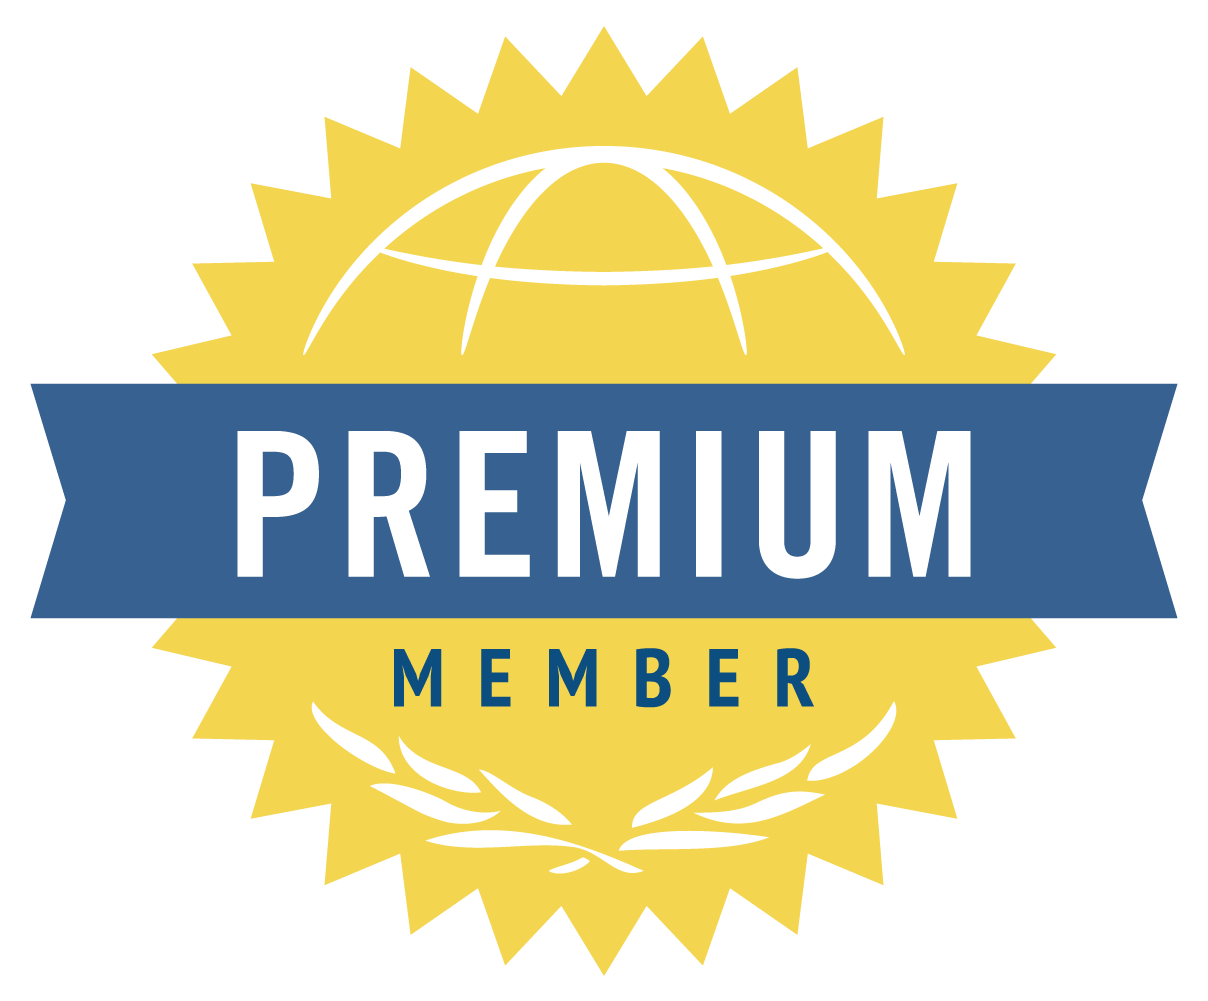 Premium member image